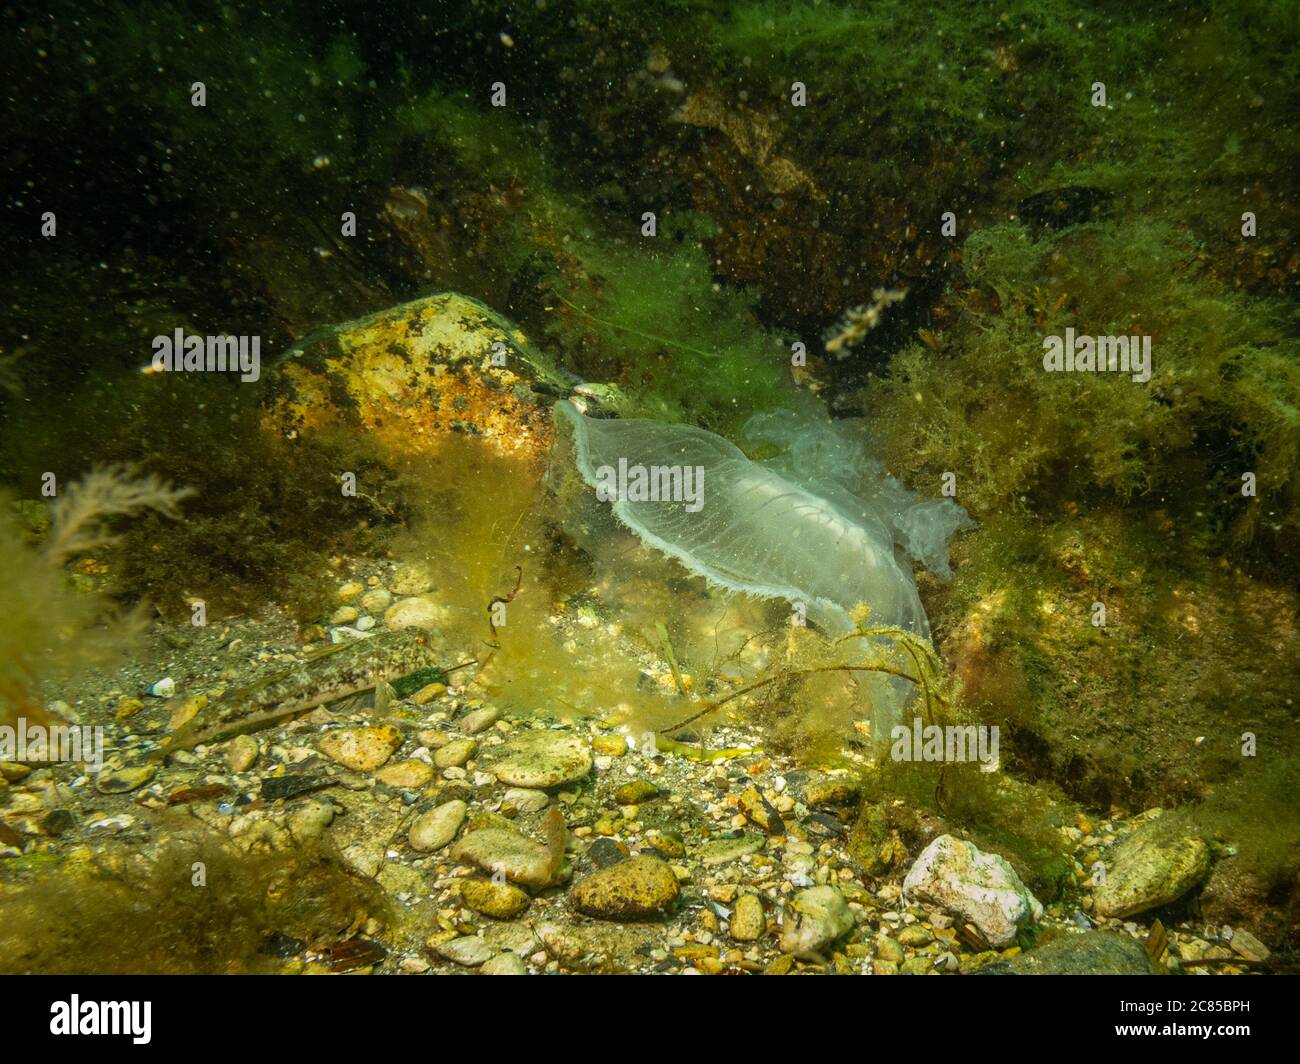 Un medusa appare in un bel mare sottomarino. Acqua verde fredda e alghe gialle. Foto di Oresund, Malmo, nel sud della Svezia. Foto Stock